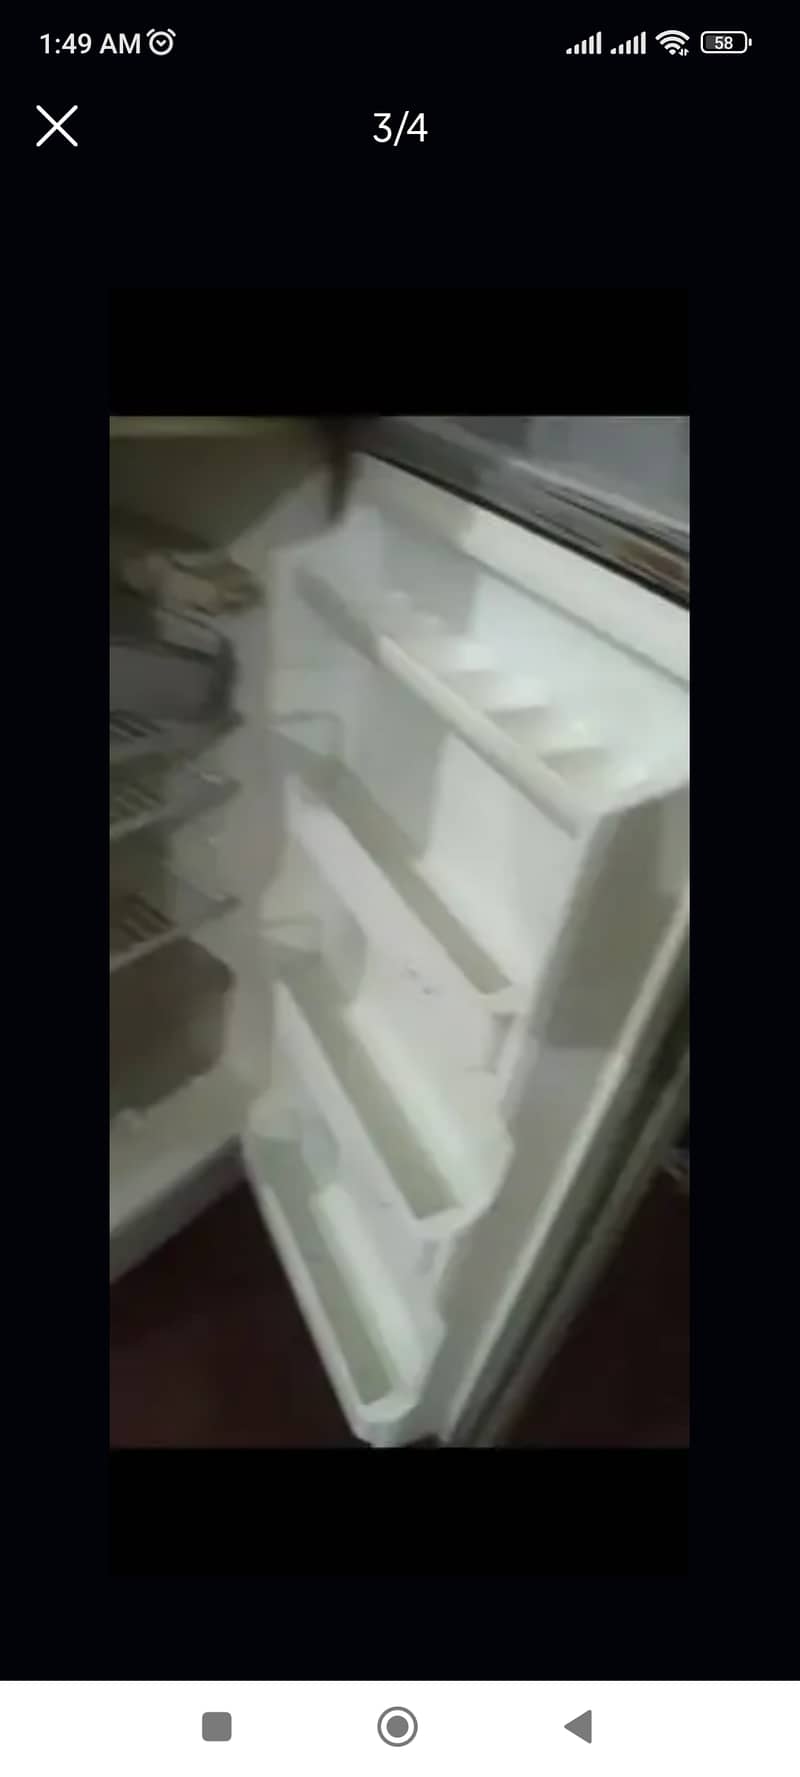 double door fridge 2